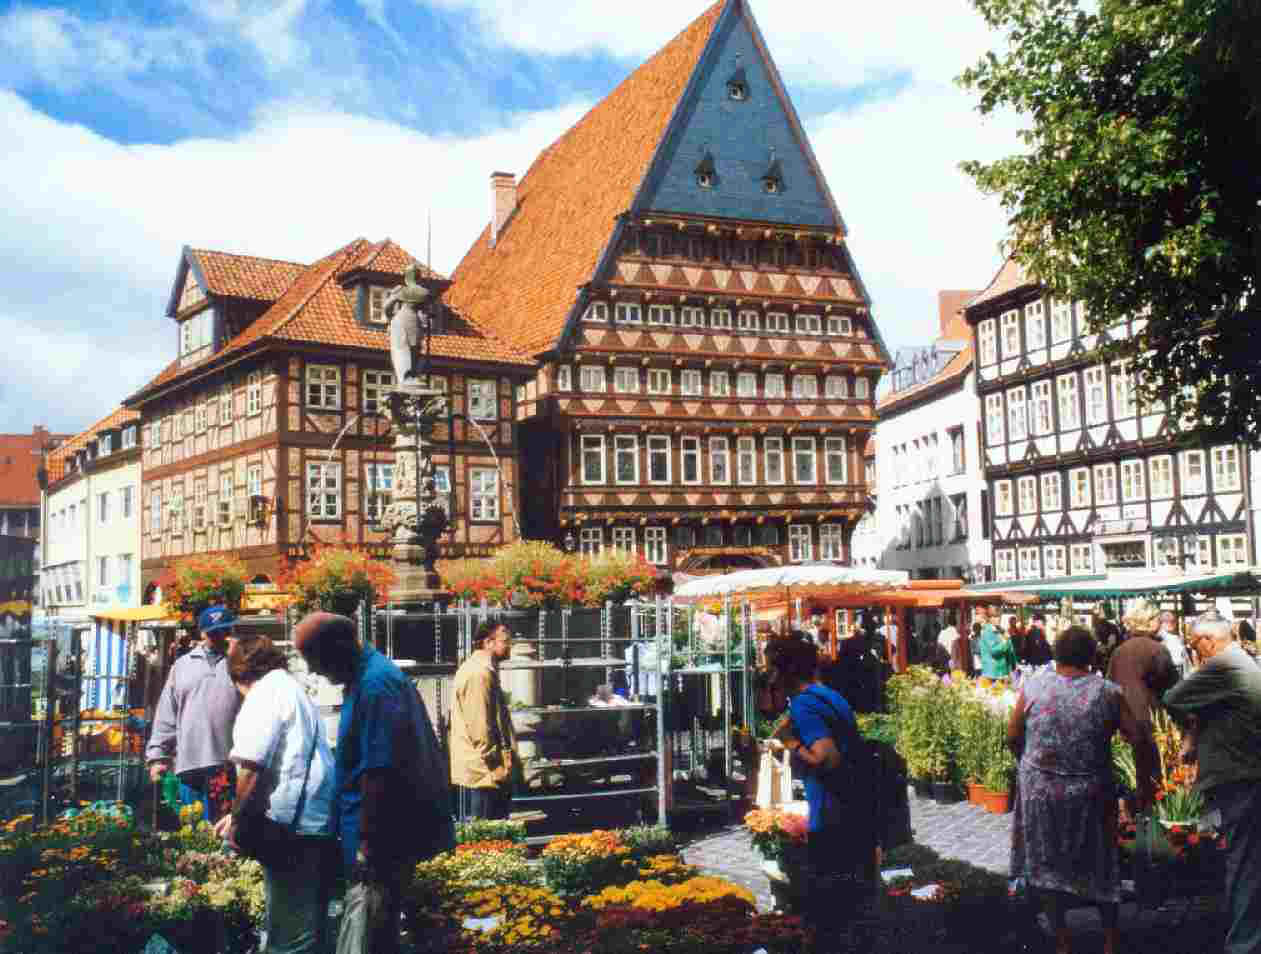 Marktplatz in Hildesheim